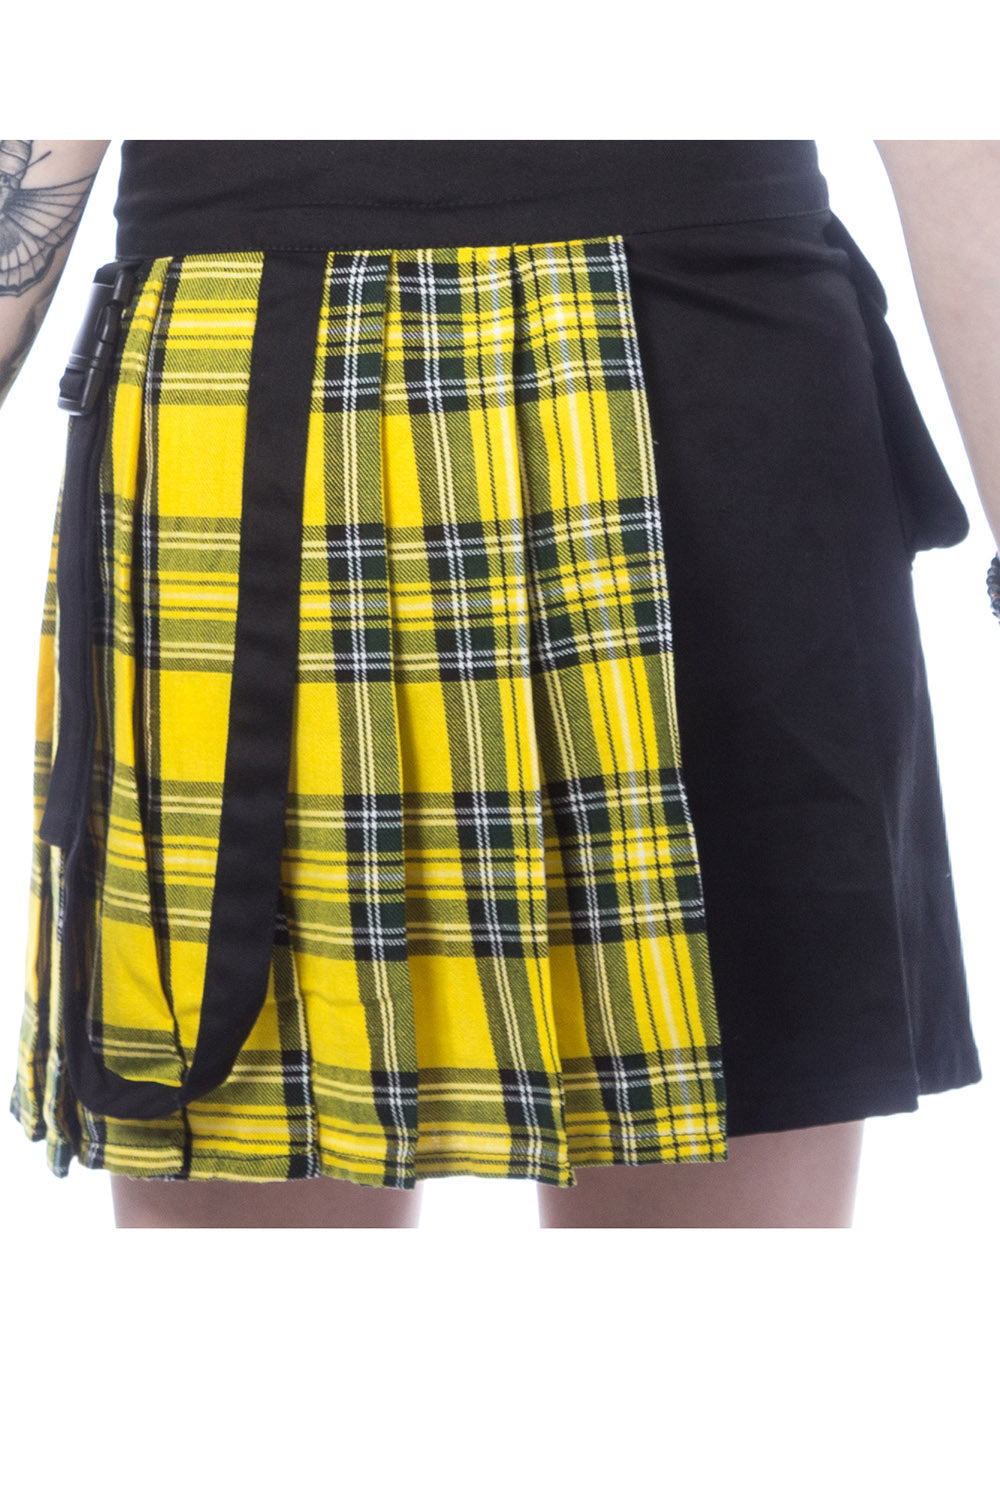 Infinity Skirt [Yellow Plaid]